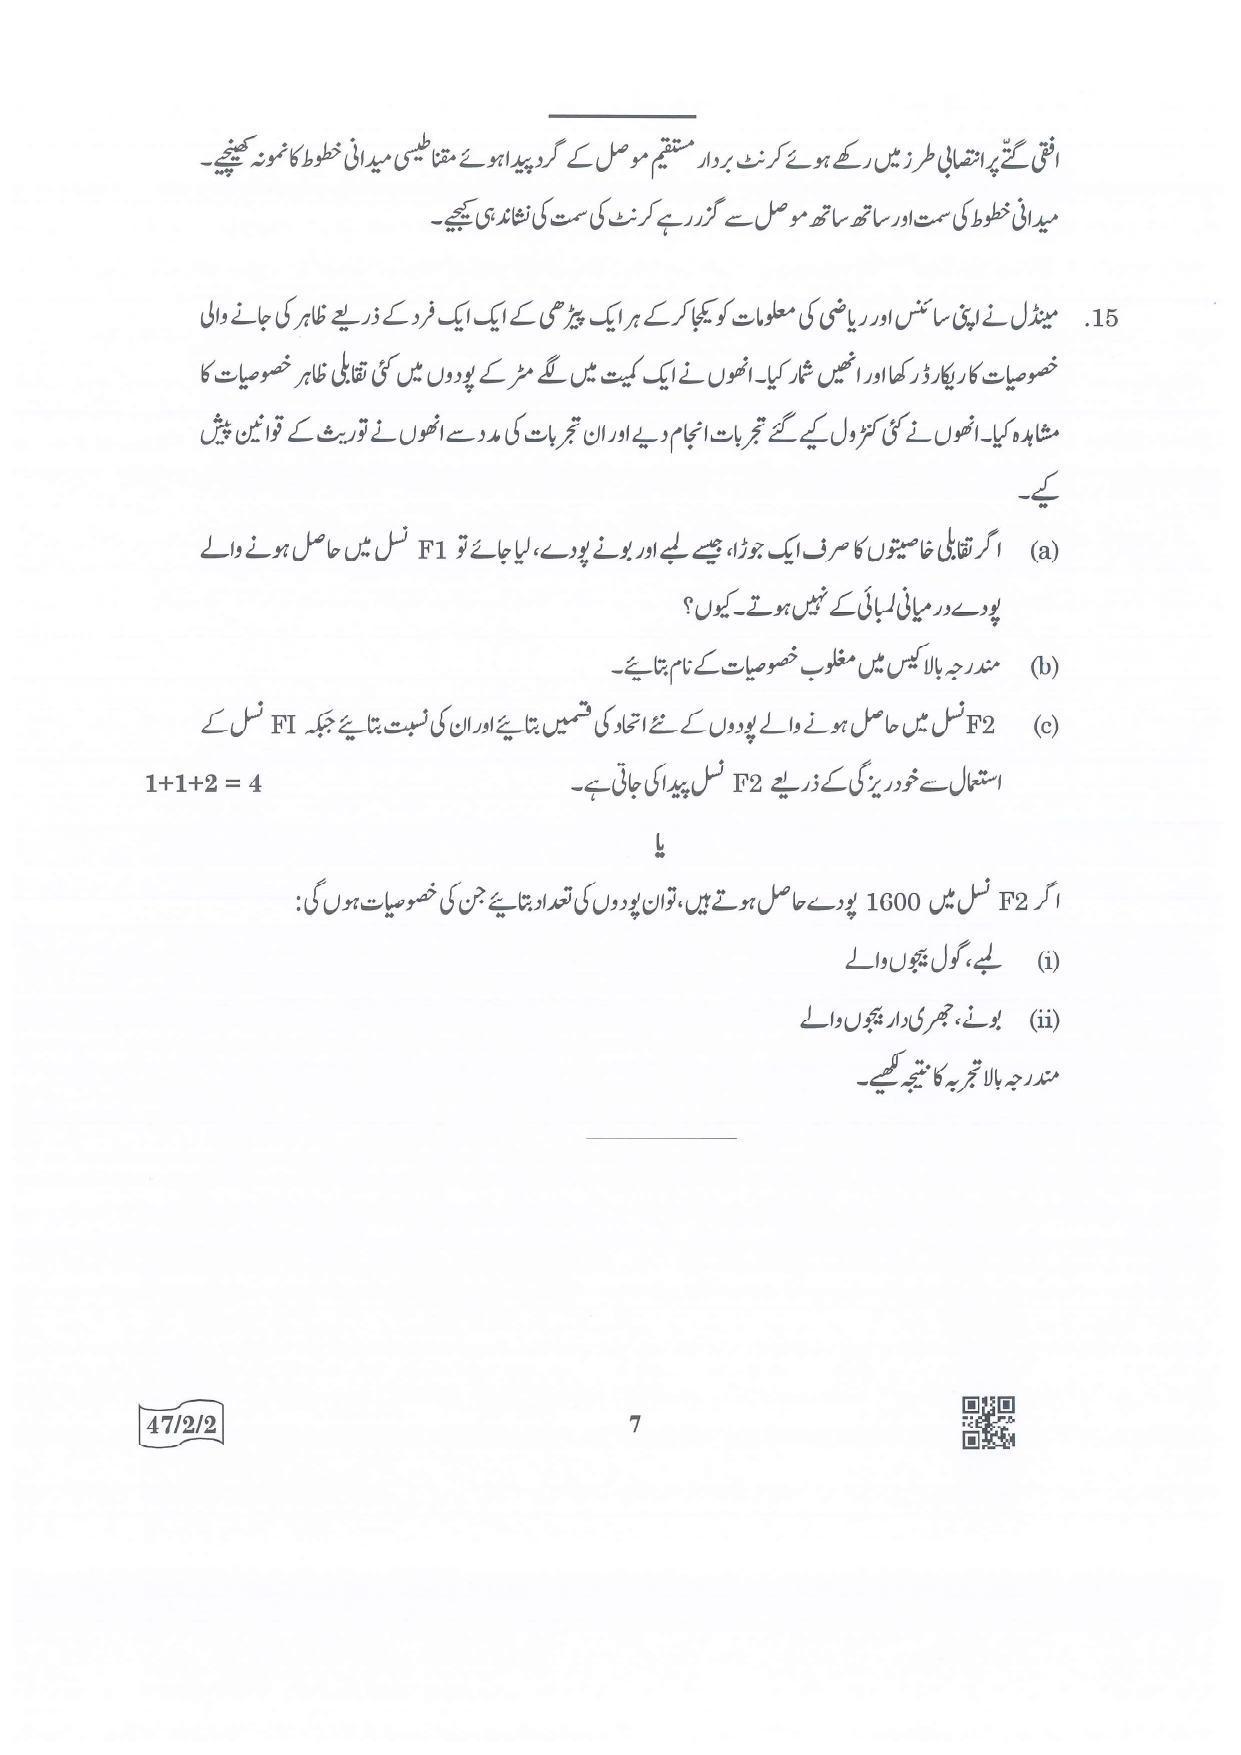 CBSE Class 10 47-2-2 Science Urdu Version.pdf 1 2022 Question Paper - Page 7